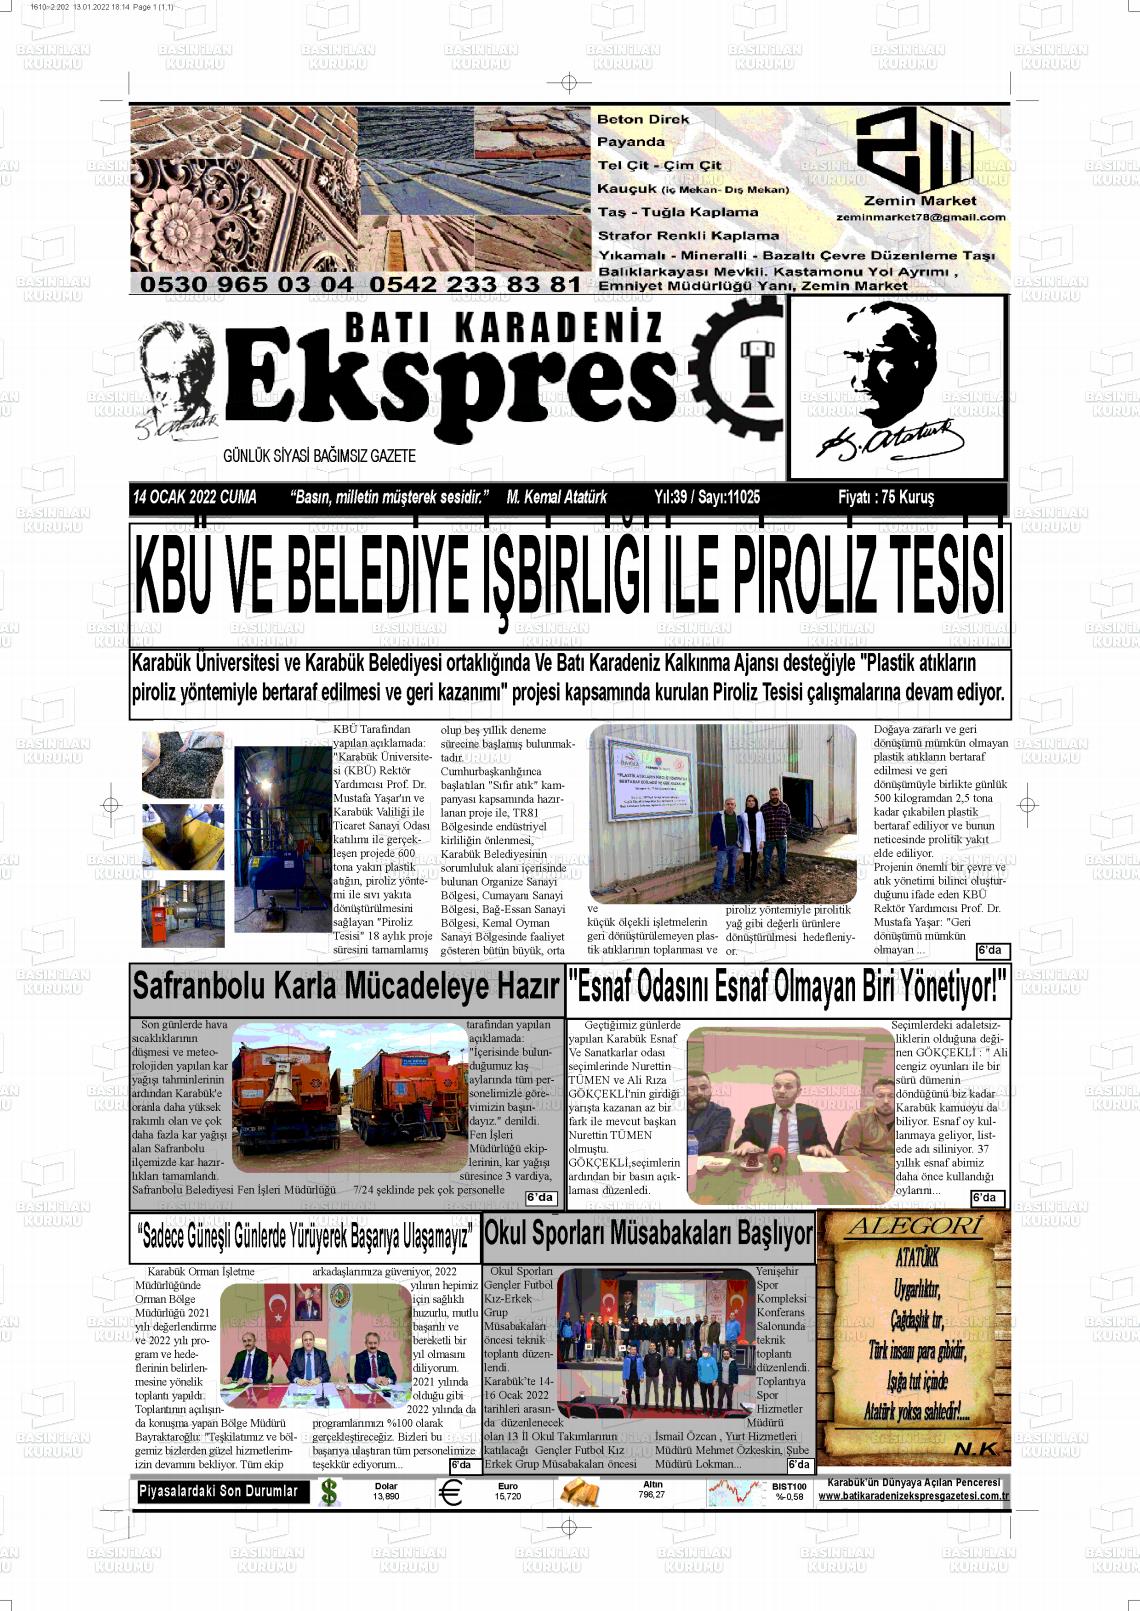 14 Ocak 2022 Batı Karadeniz Ekspres Gazete Manşeti